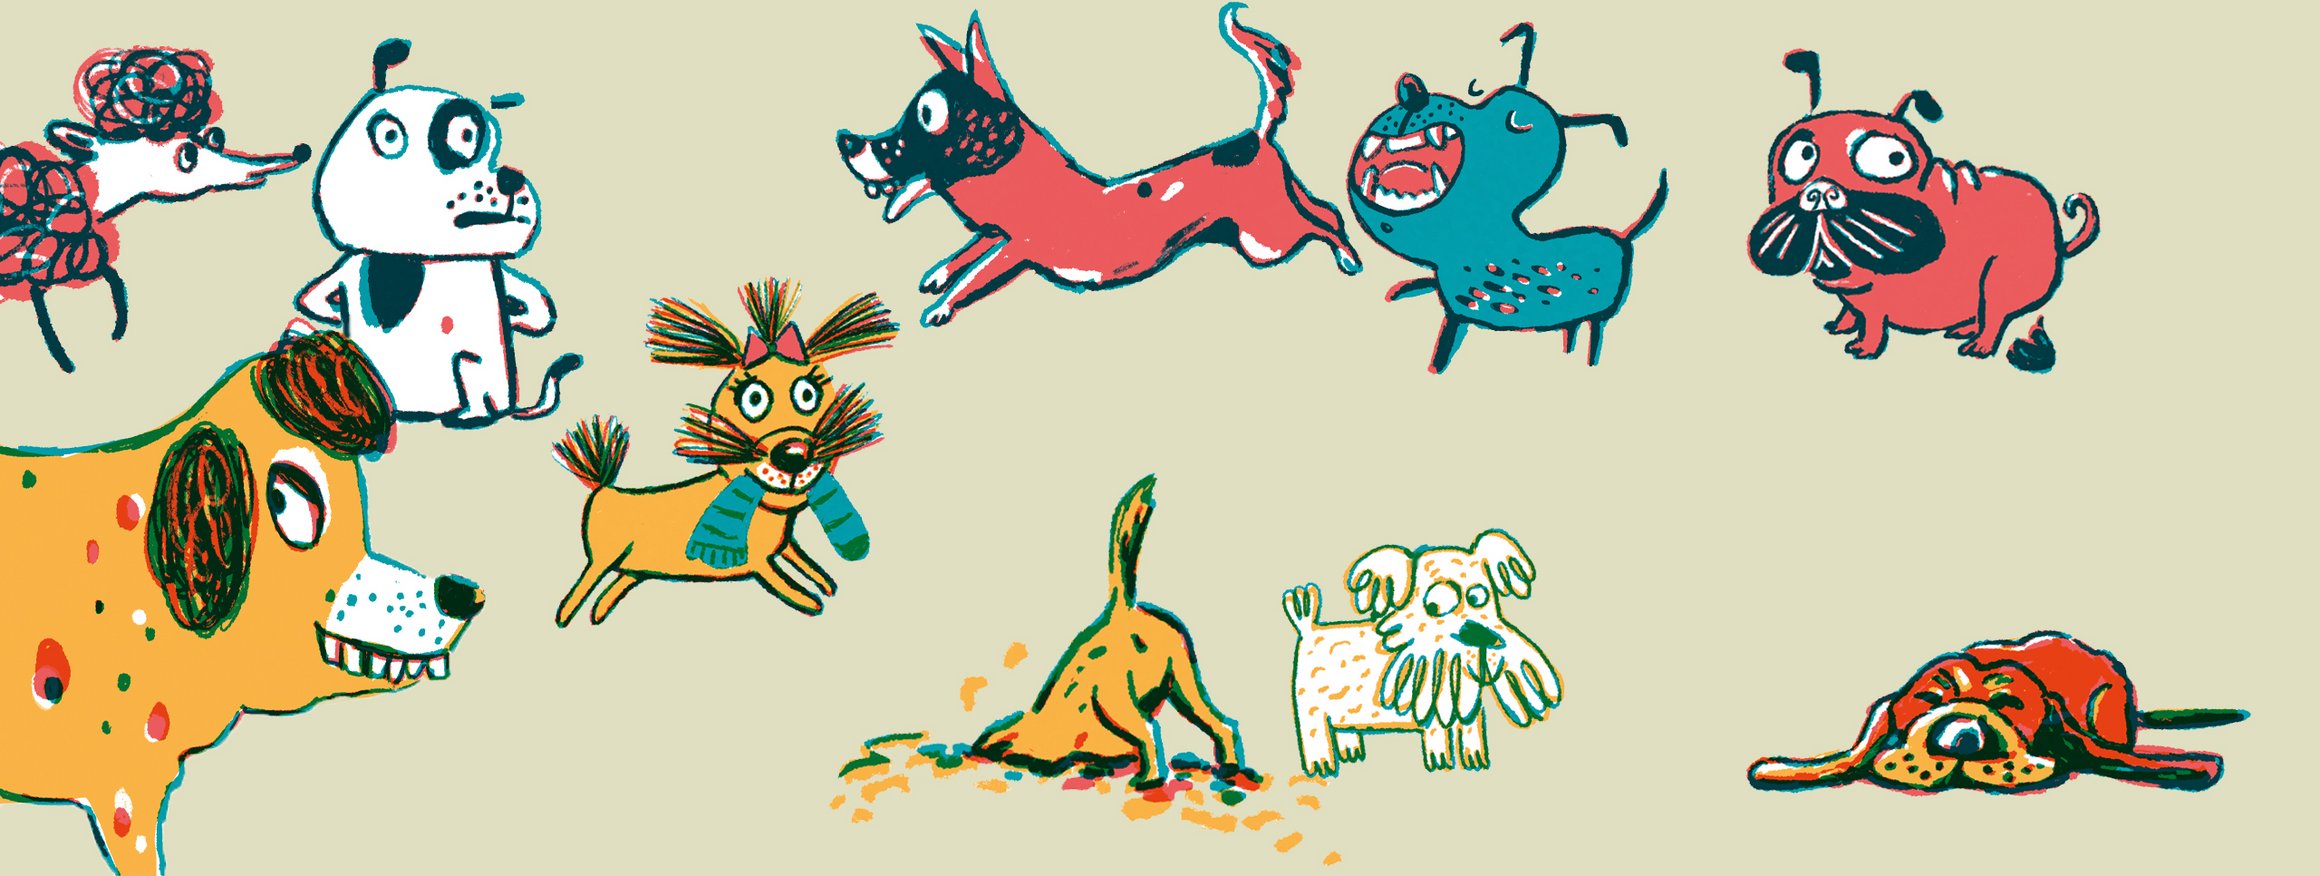 Die Illustration zeigt verschiedene Hunderassen, die mit einander rumtollen